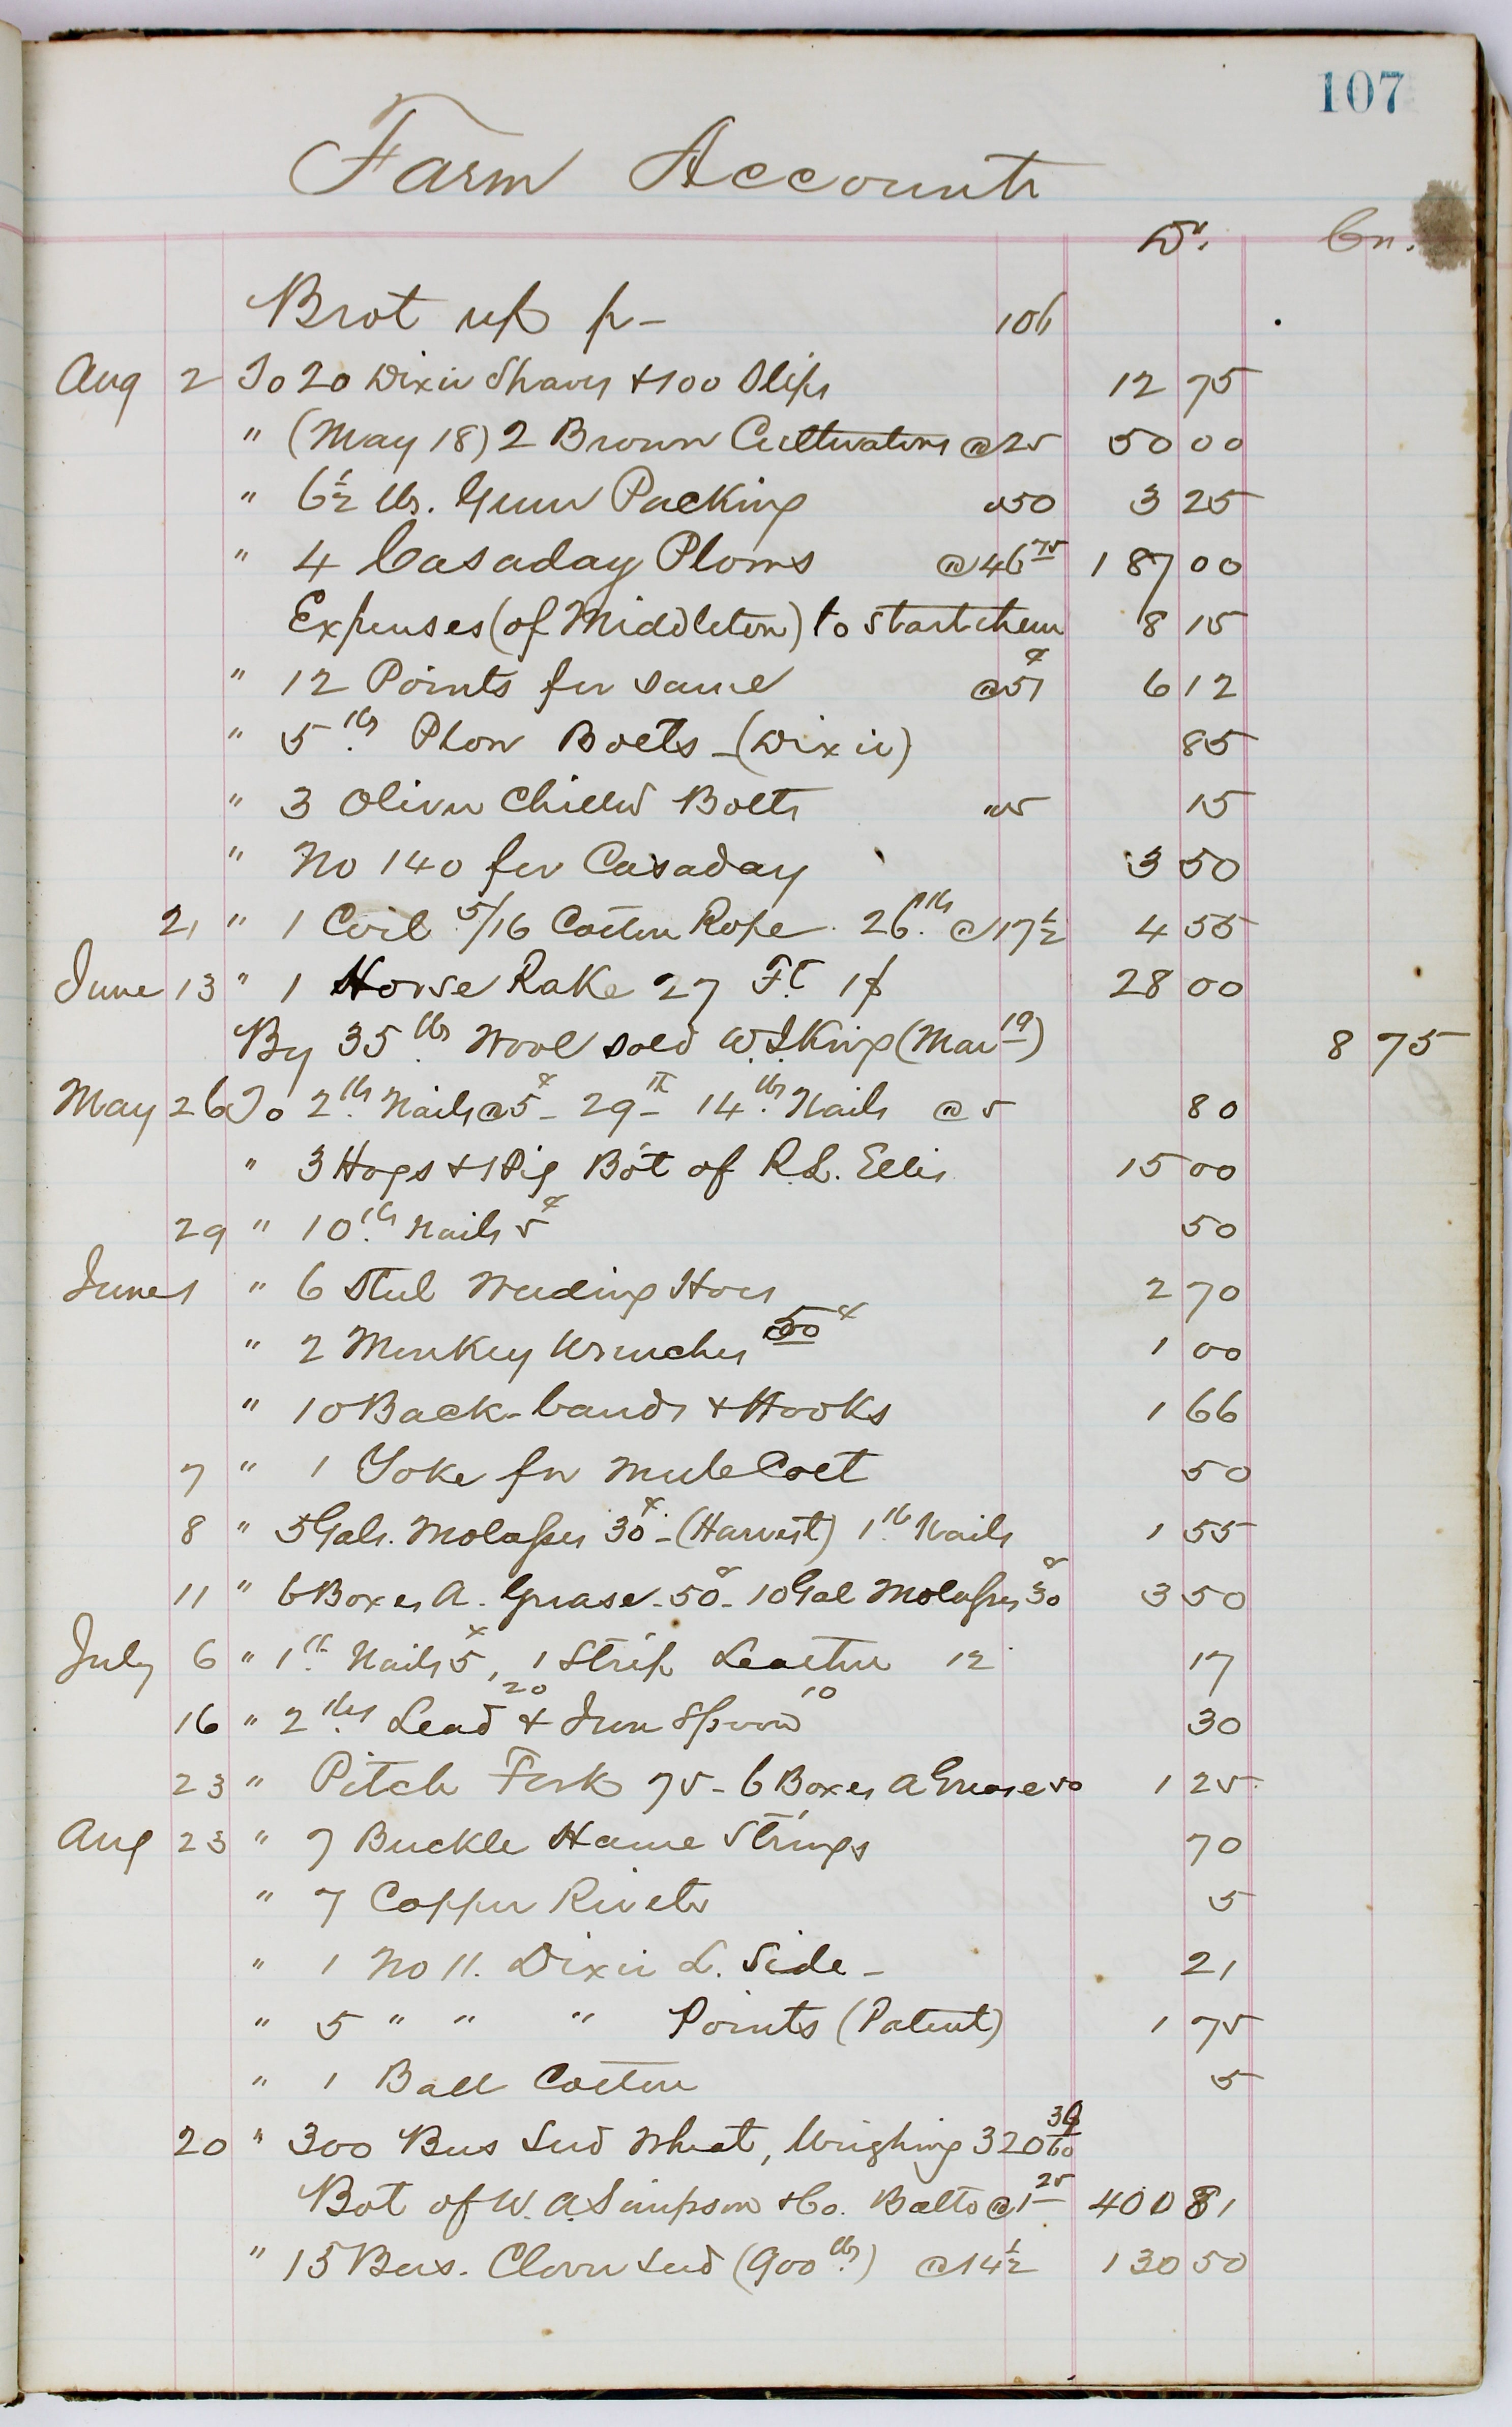 List #33 - Recent Acquisitions: Manuscripts & Archives